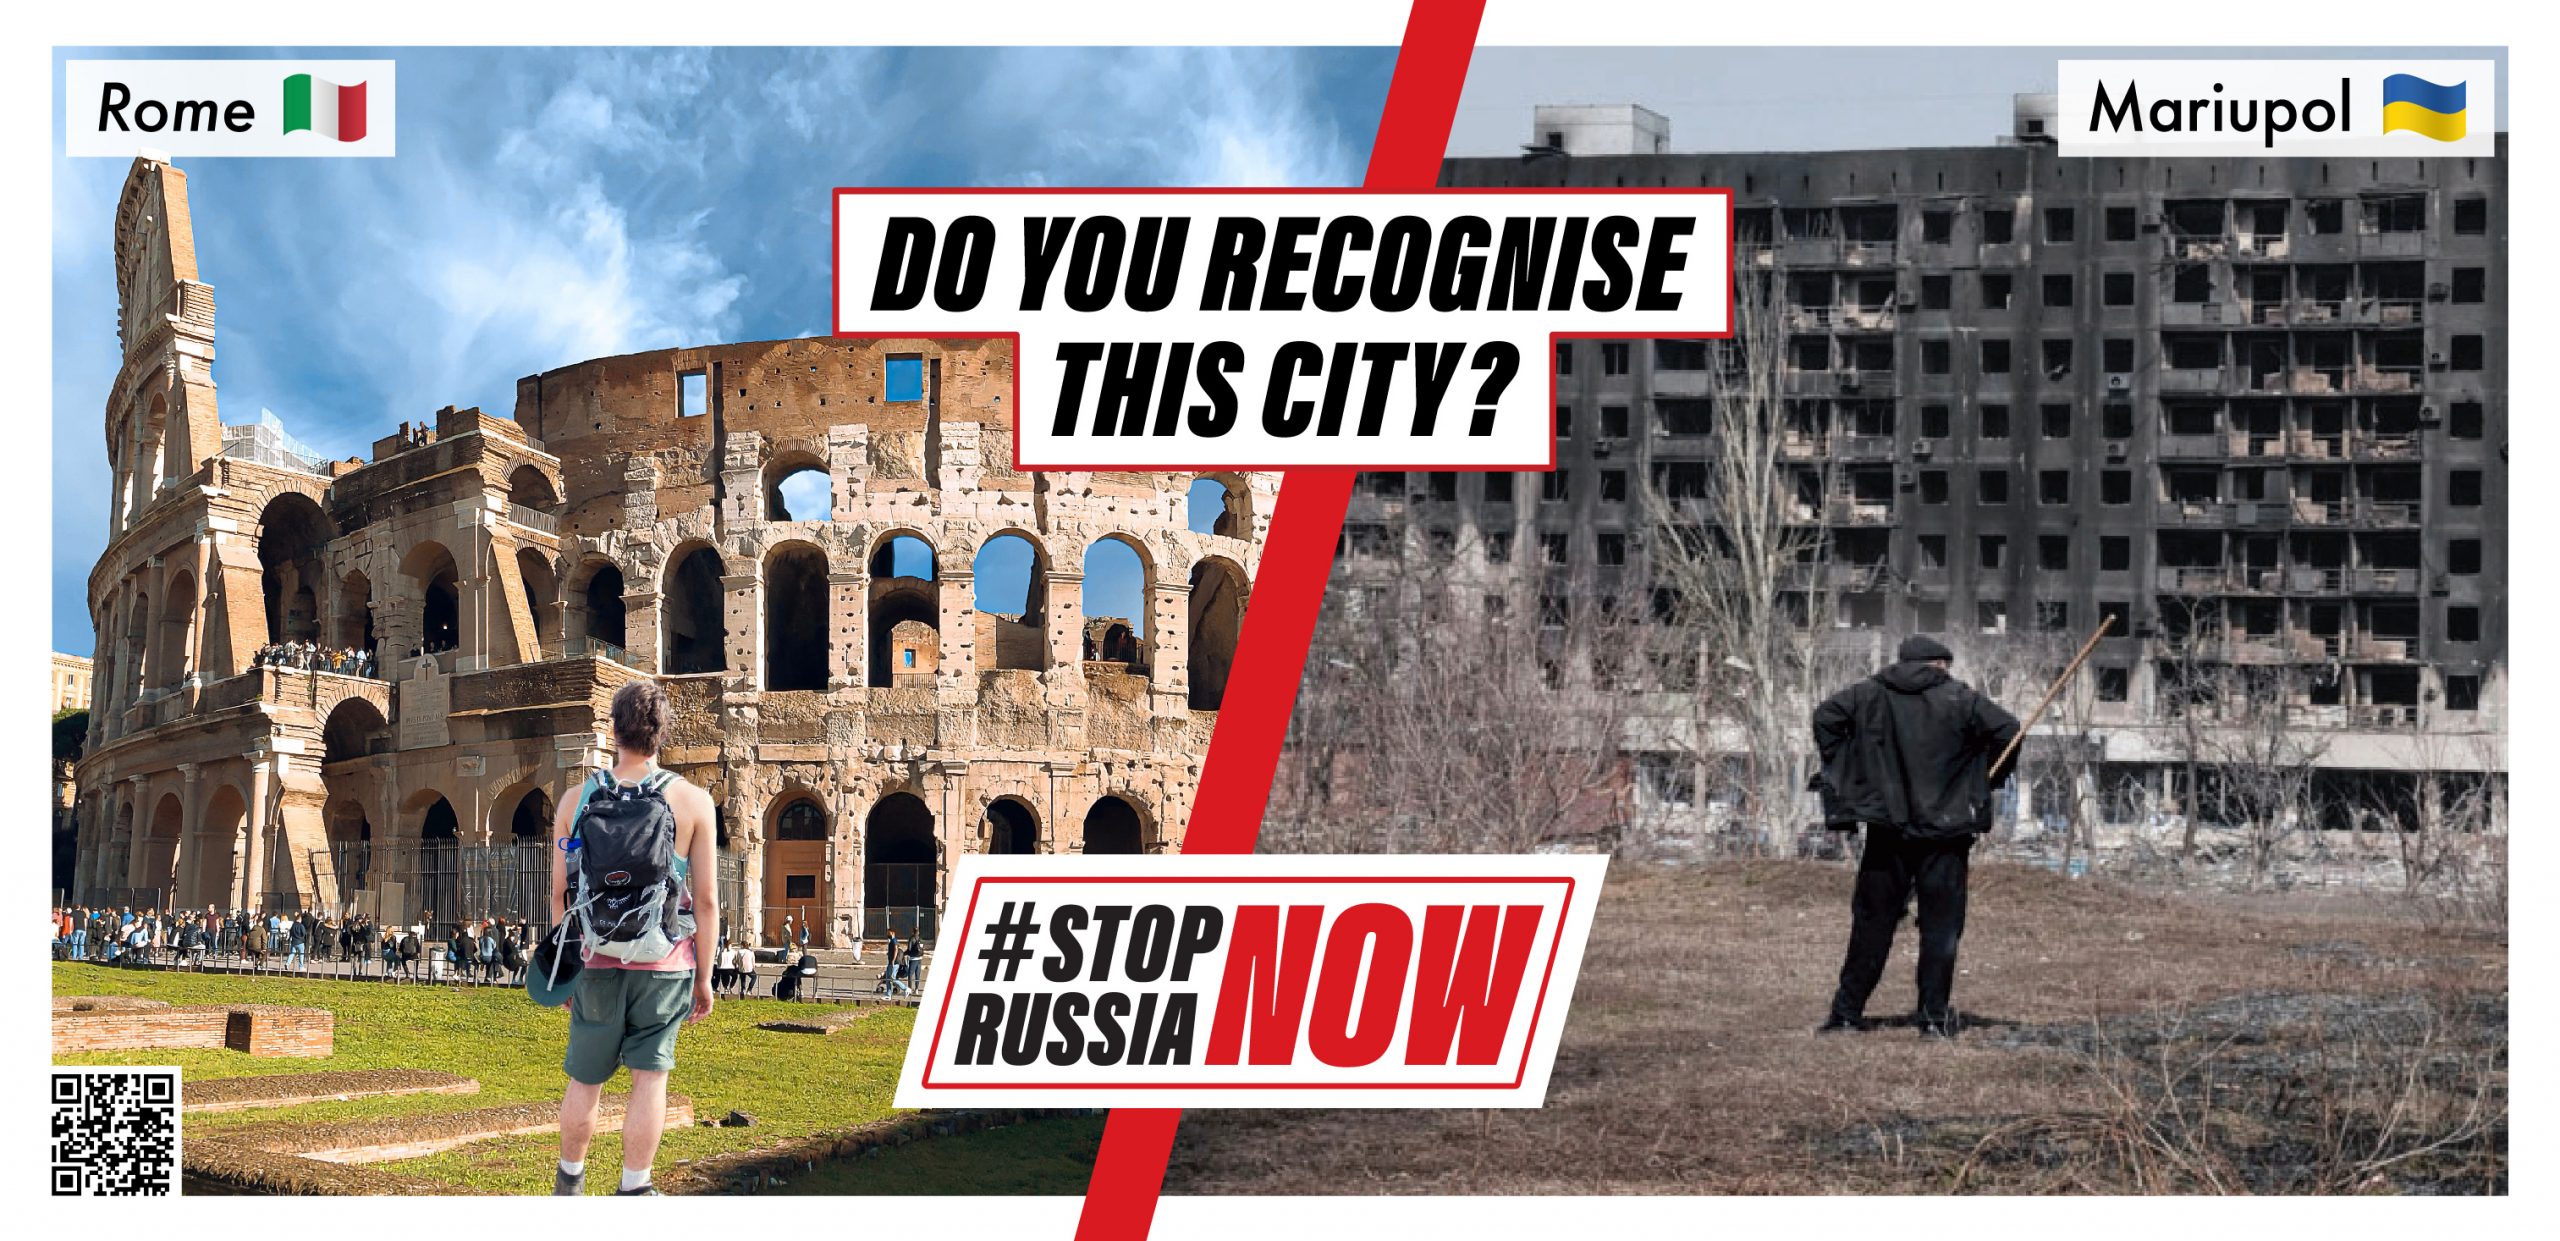 Kampania #StopRussiaNow, akcja billboardowa polskiego rządu